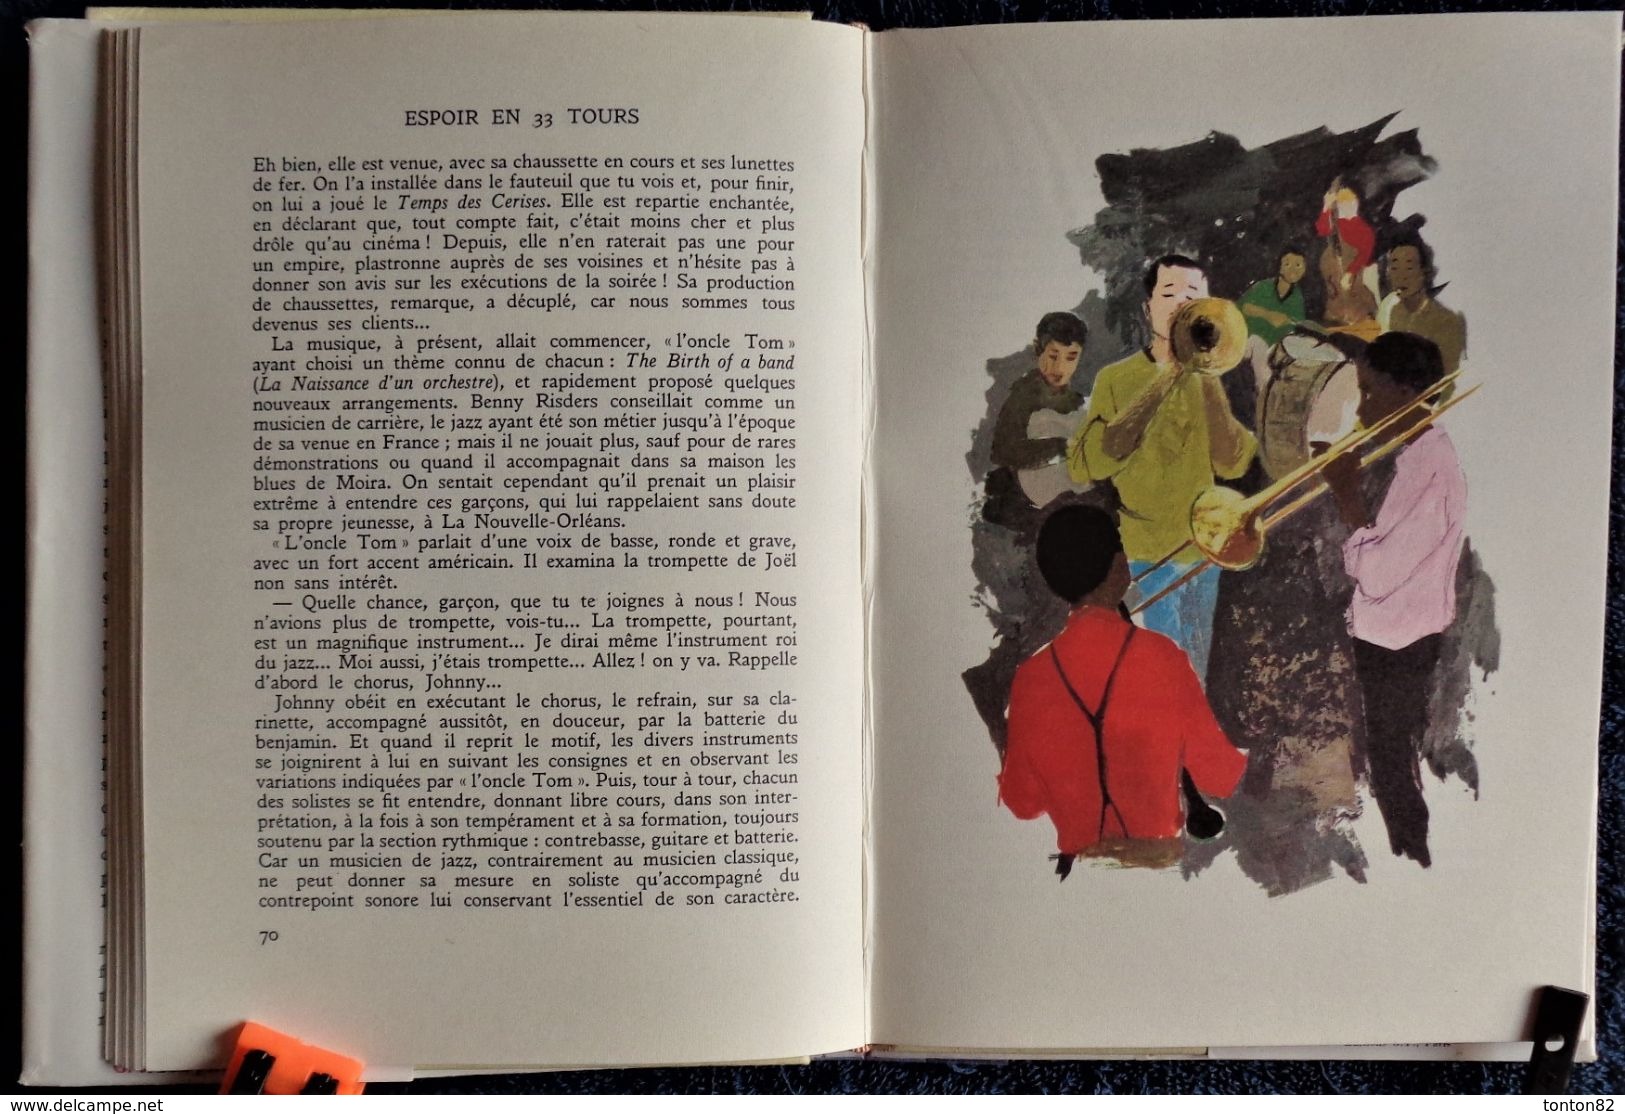 Saint-Marcoux - Espoir en 33 tours - Bibliothèque Rouge et Or n° 607 - ( 1961 ) .